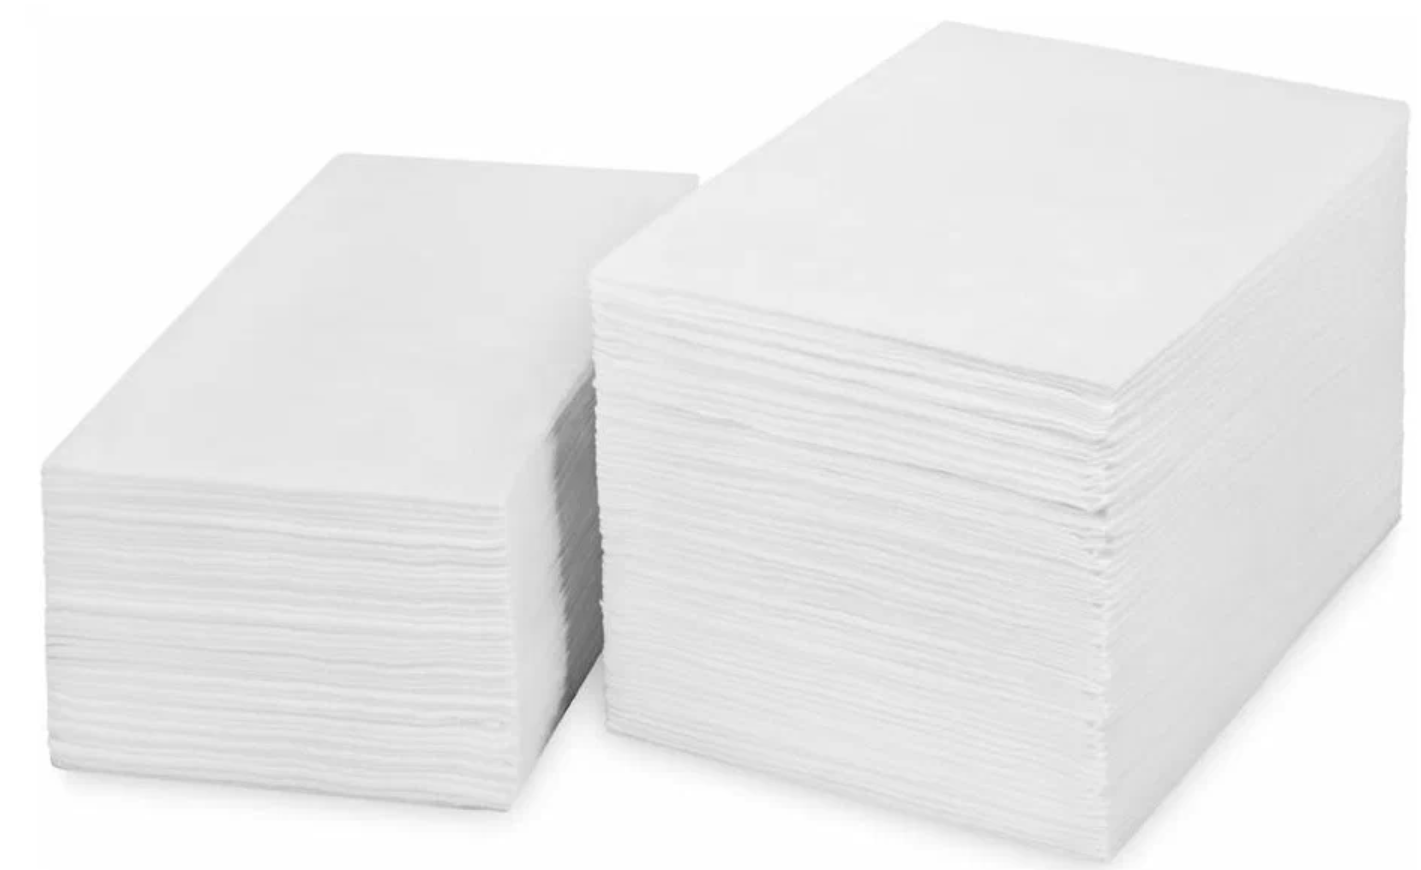 Полотенце вафельное IGRObeauty, поштучного сложения, белое, 50 г/м2, 45x90 см, 50 штук